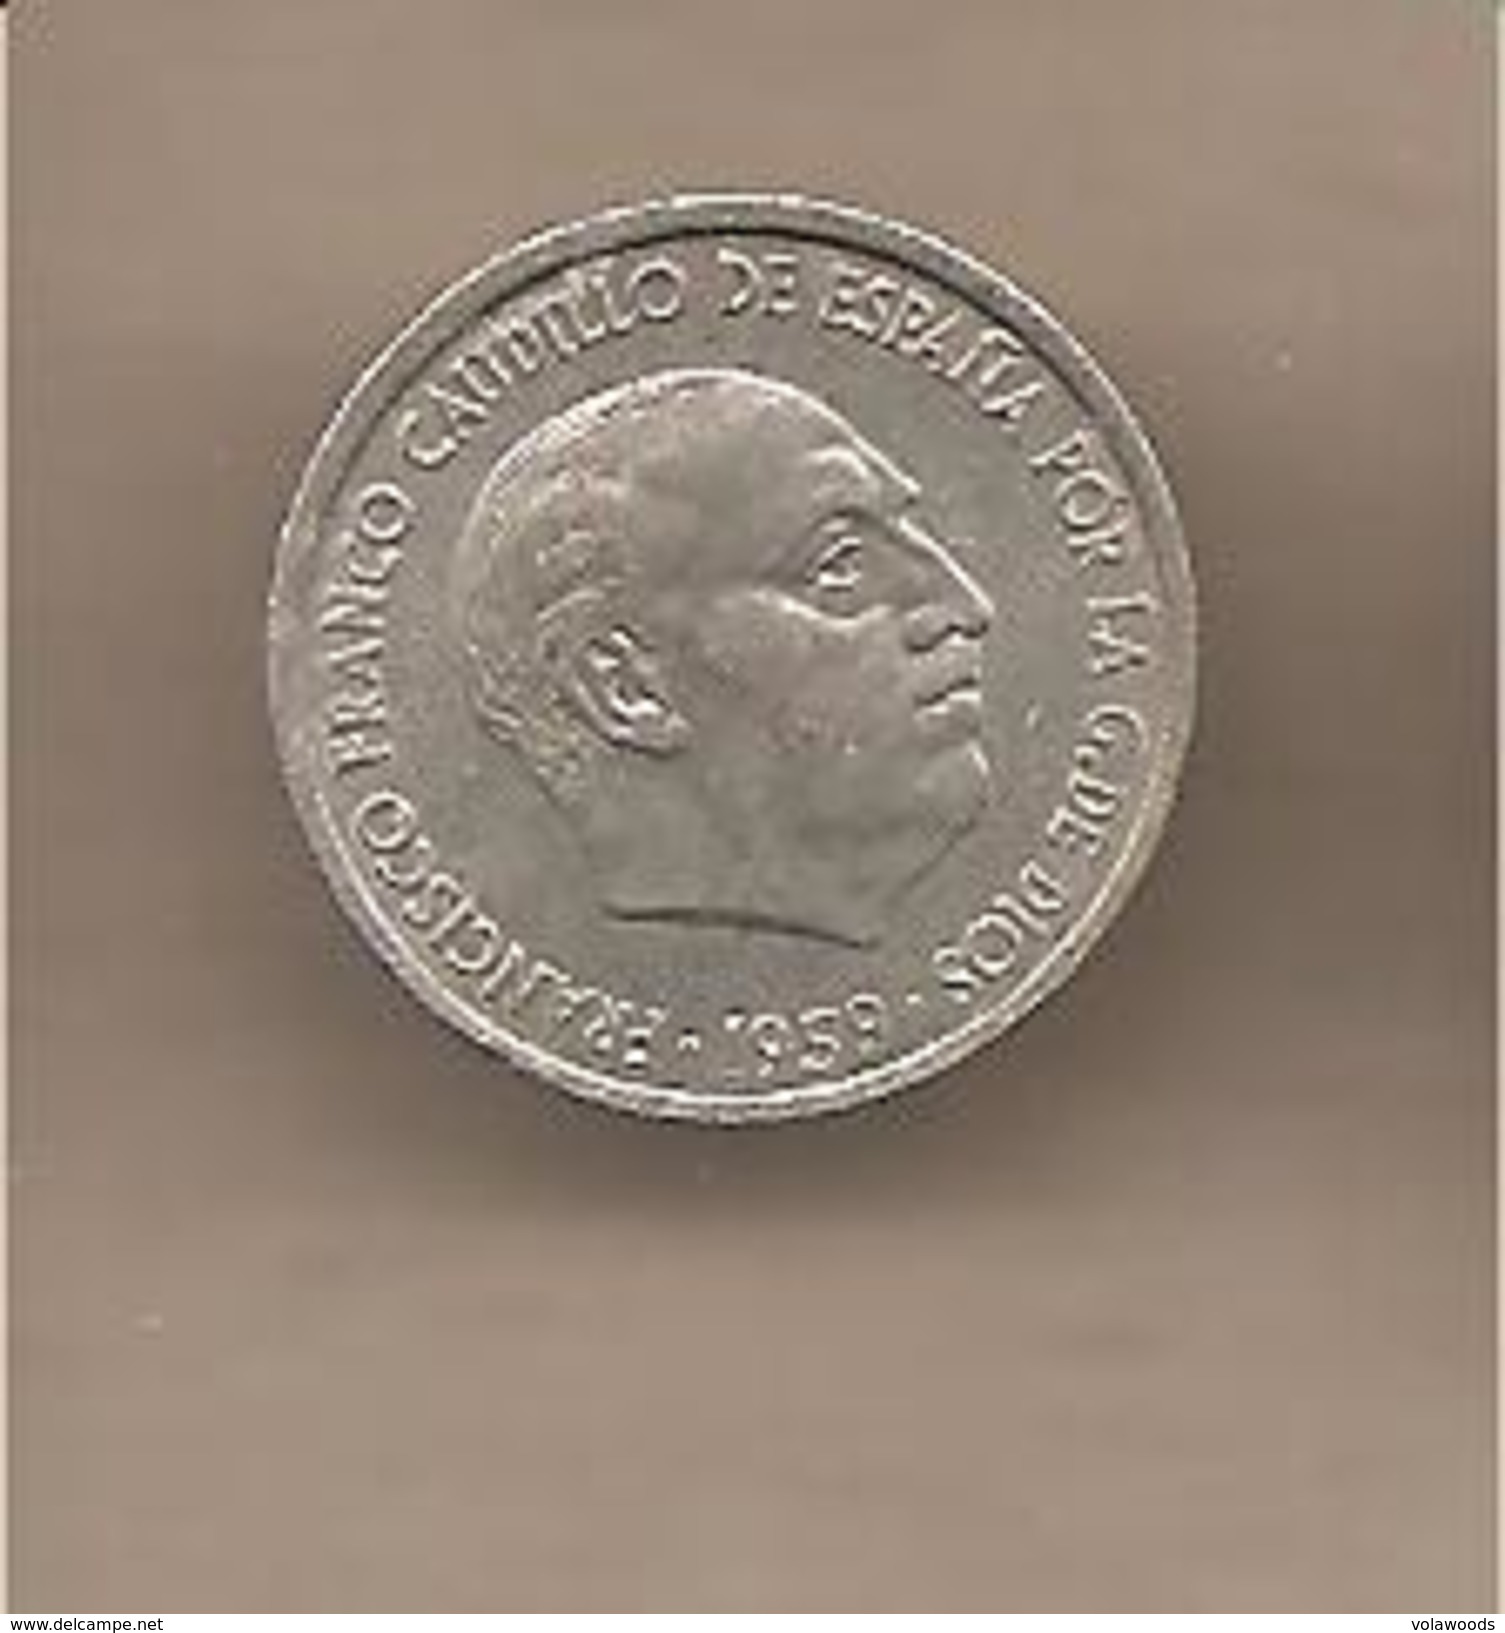 Spagna - Moneta Circolata Da 10 Centesimi - 1959 - 10 Céntimos